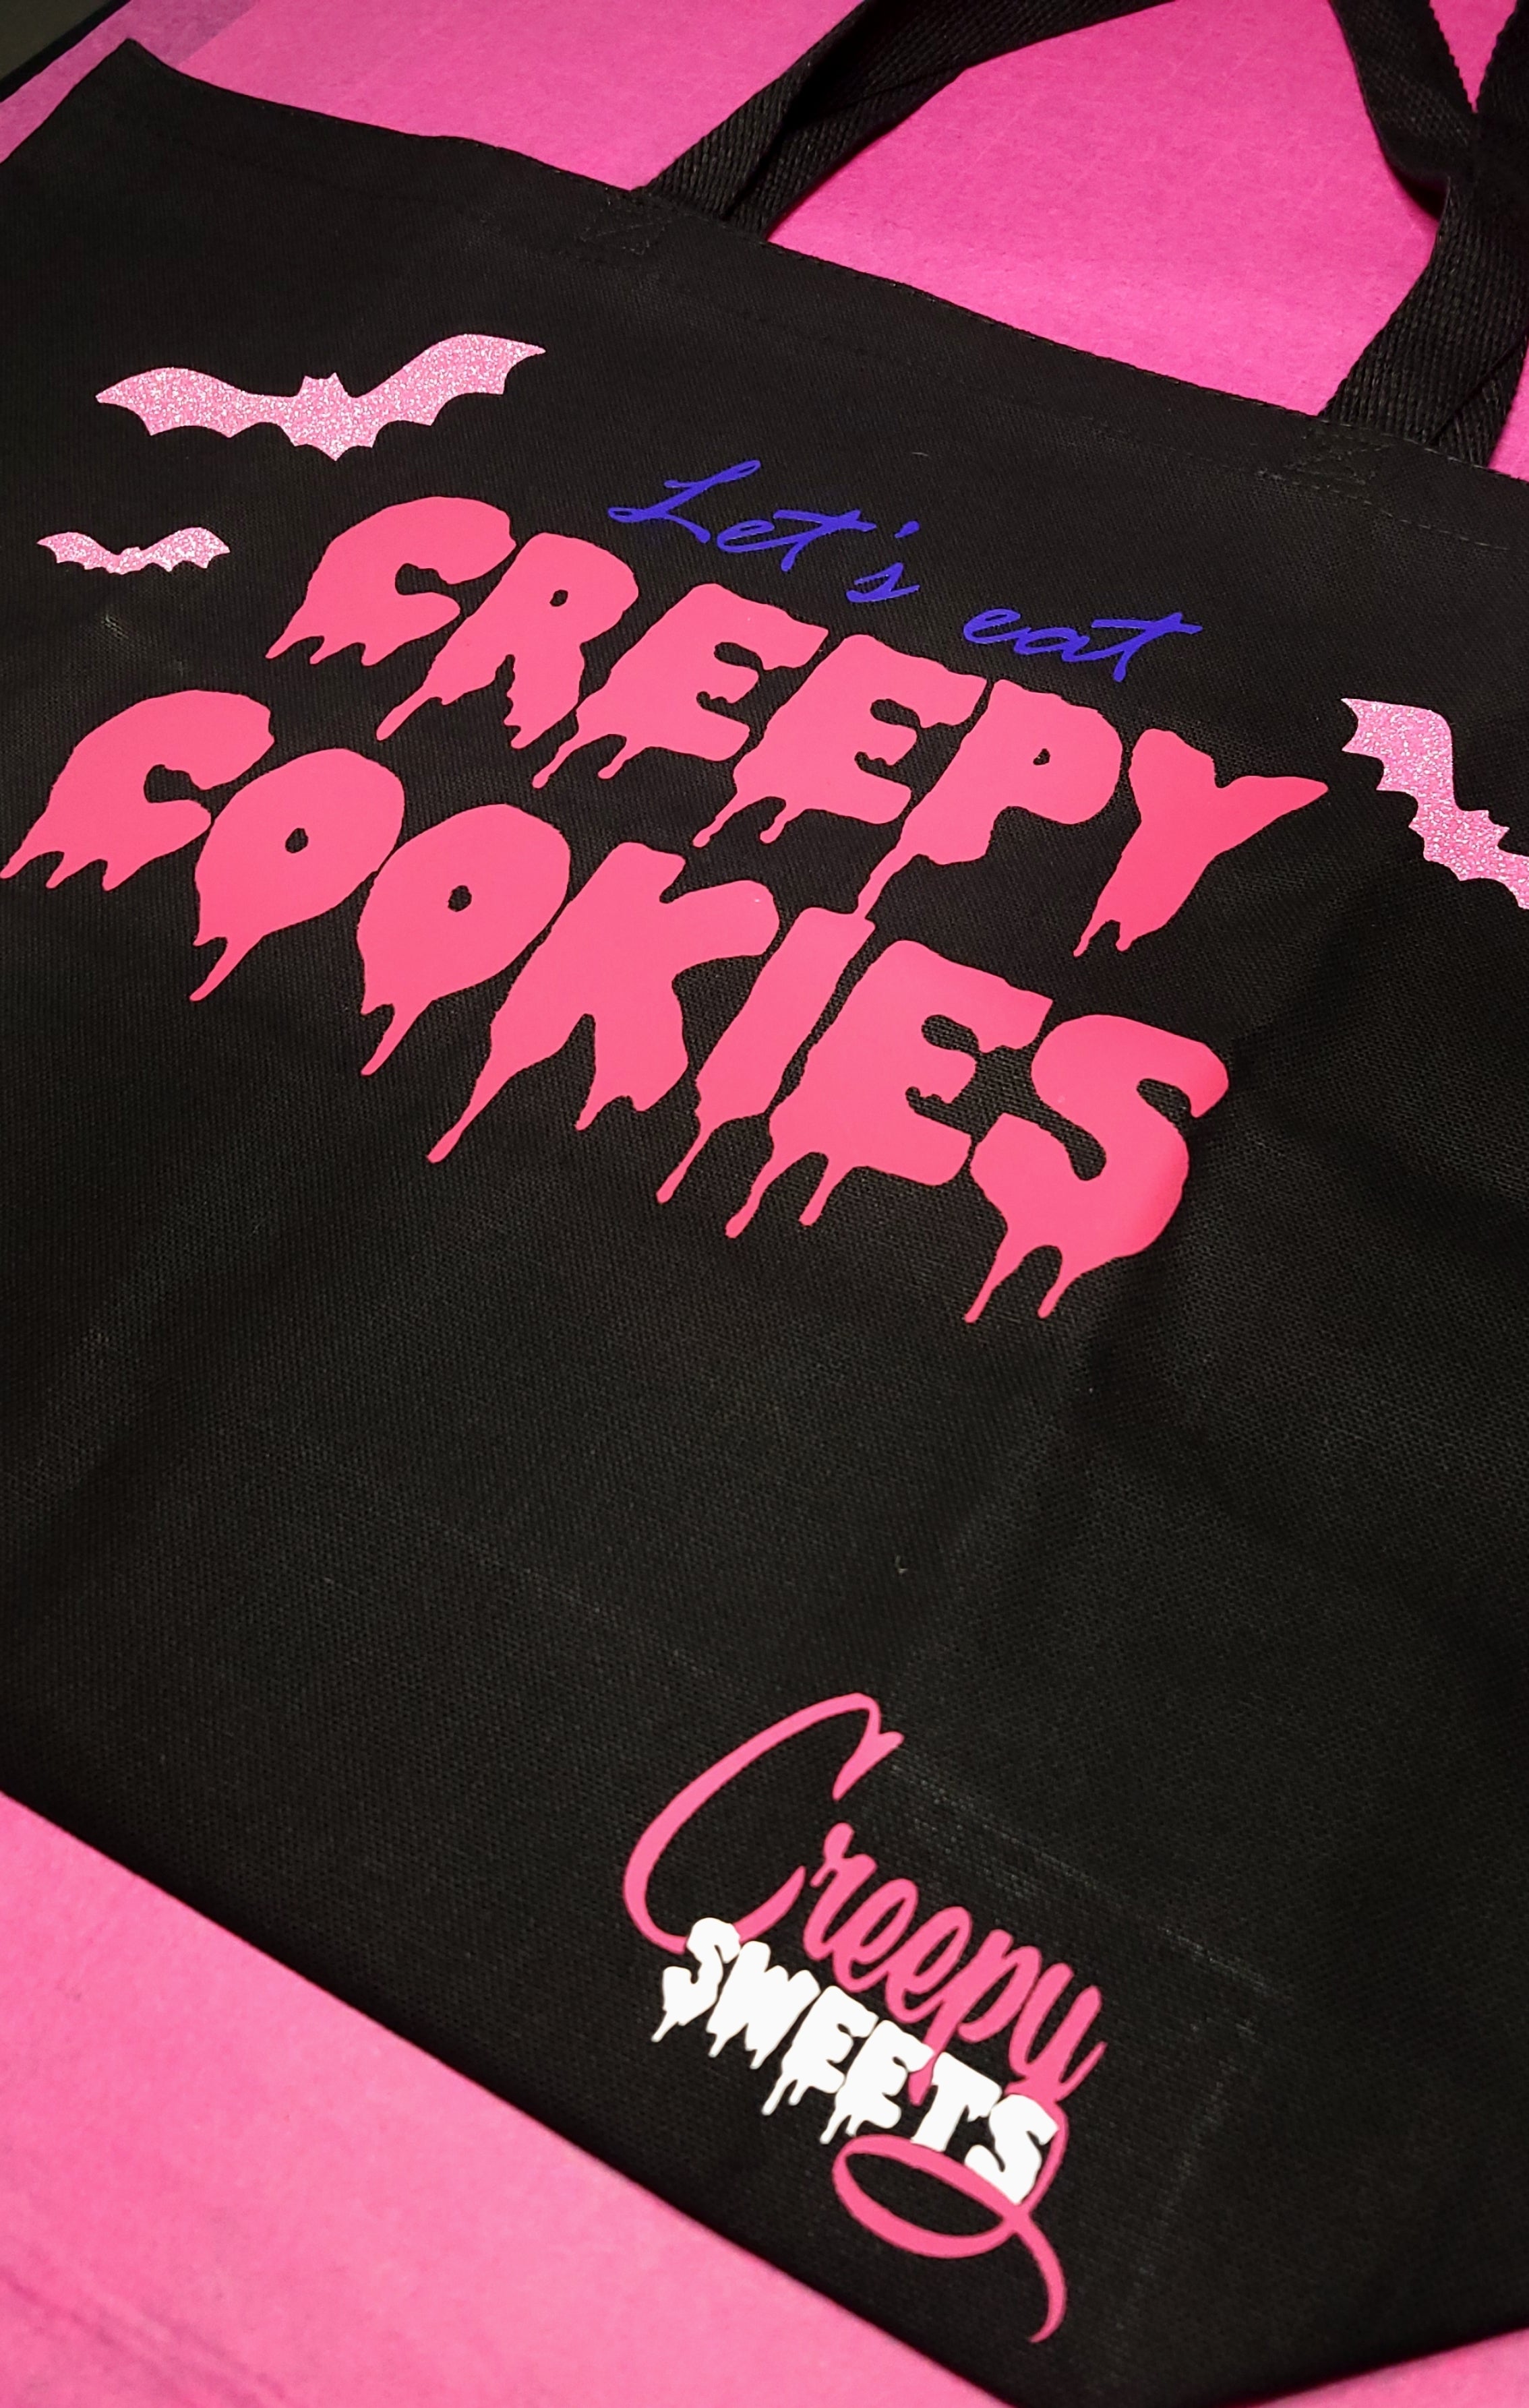 Creepy Tote - Let's Eat Creepy Cookies